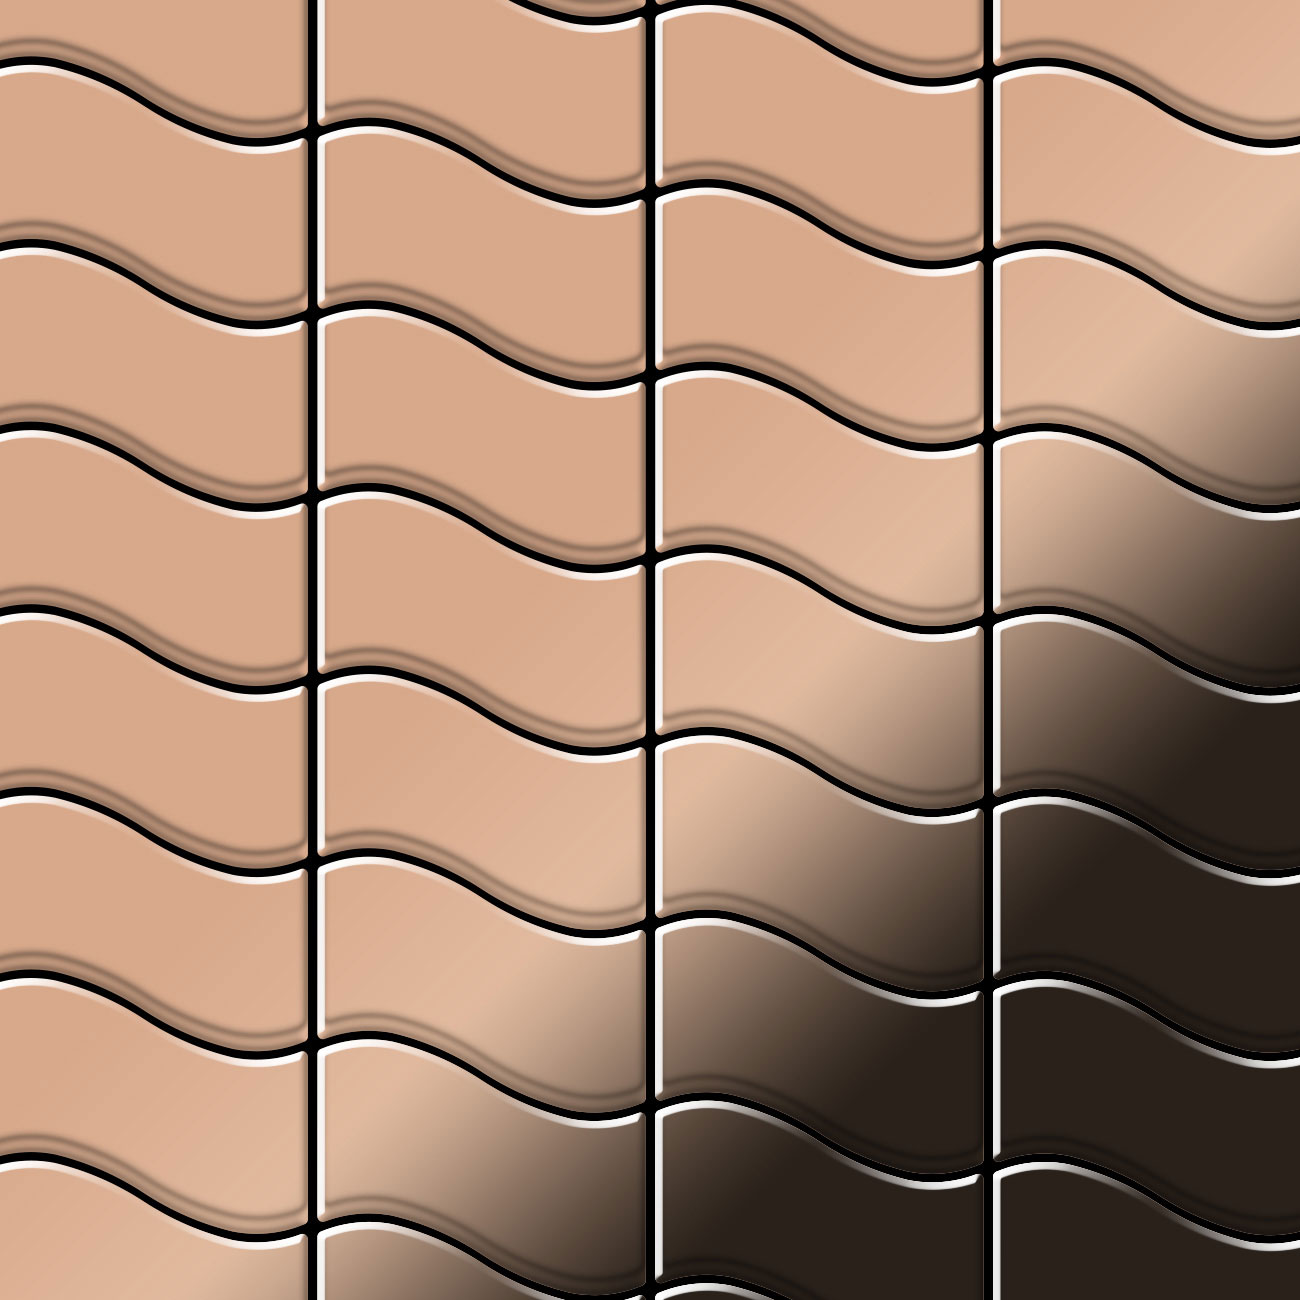 FLUX Copper Tiles